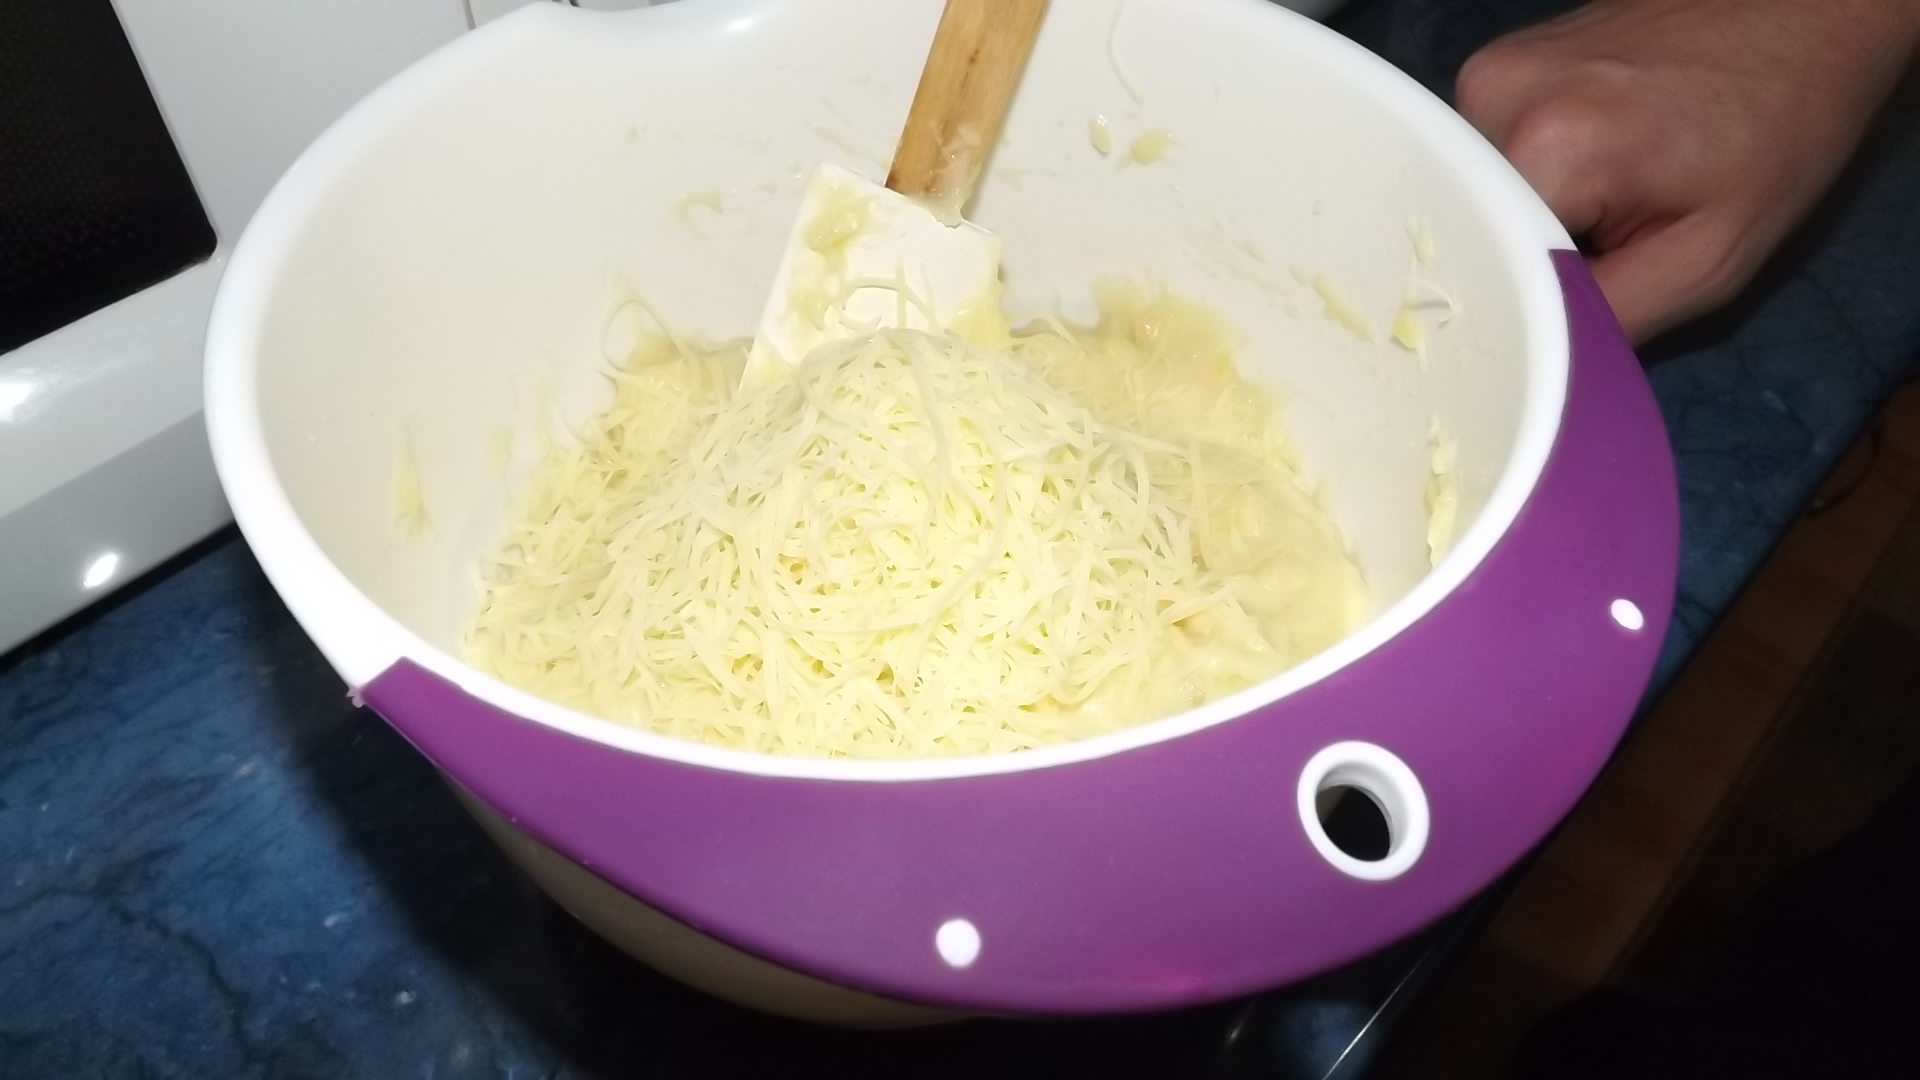 Aperitiv mini tarte din cartofi cu peste, pasta de branza si sos de iaurt